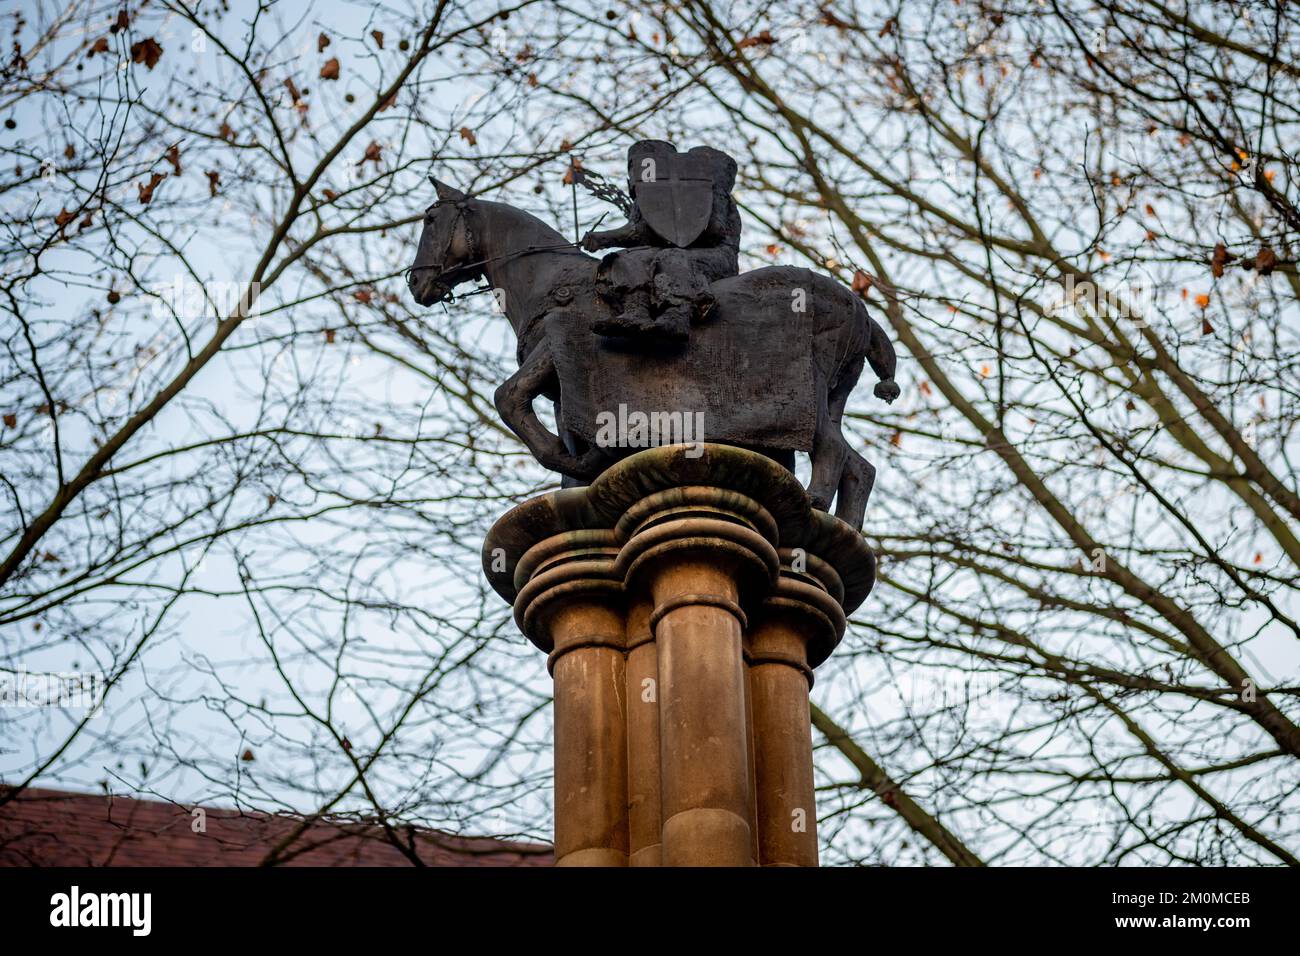 Colonne du millénaire dans la cour du Temple, à l'extérieur de l'église du Temple, montrant deux chevaliers sur un cheval, le sceau des Templiers. Londres, Royaume-Uni Banque D'Images